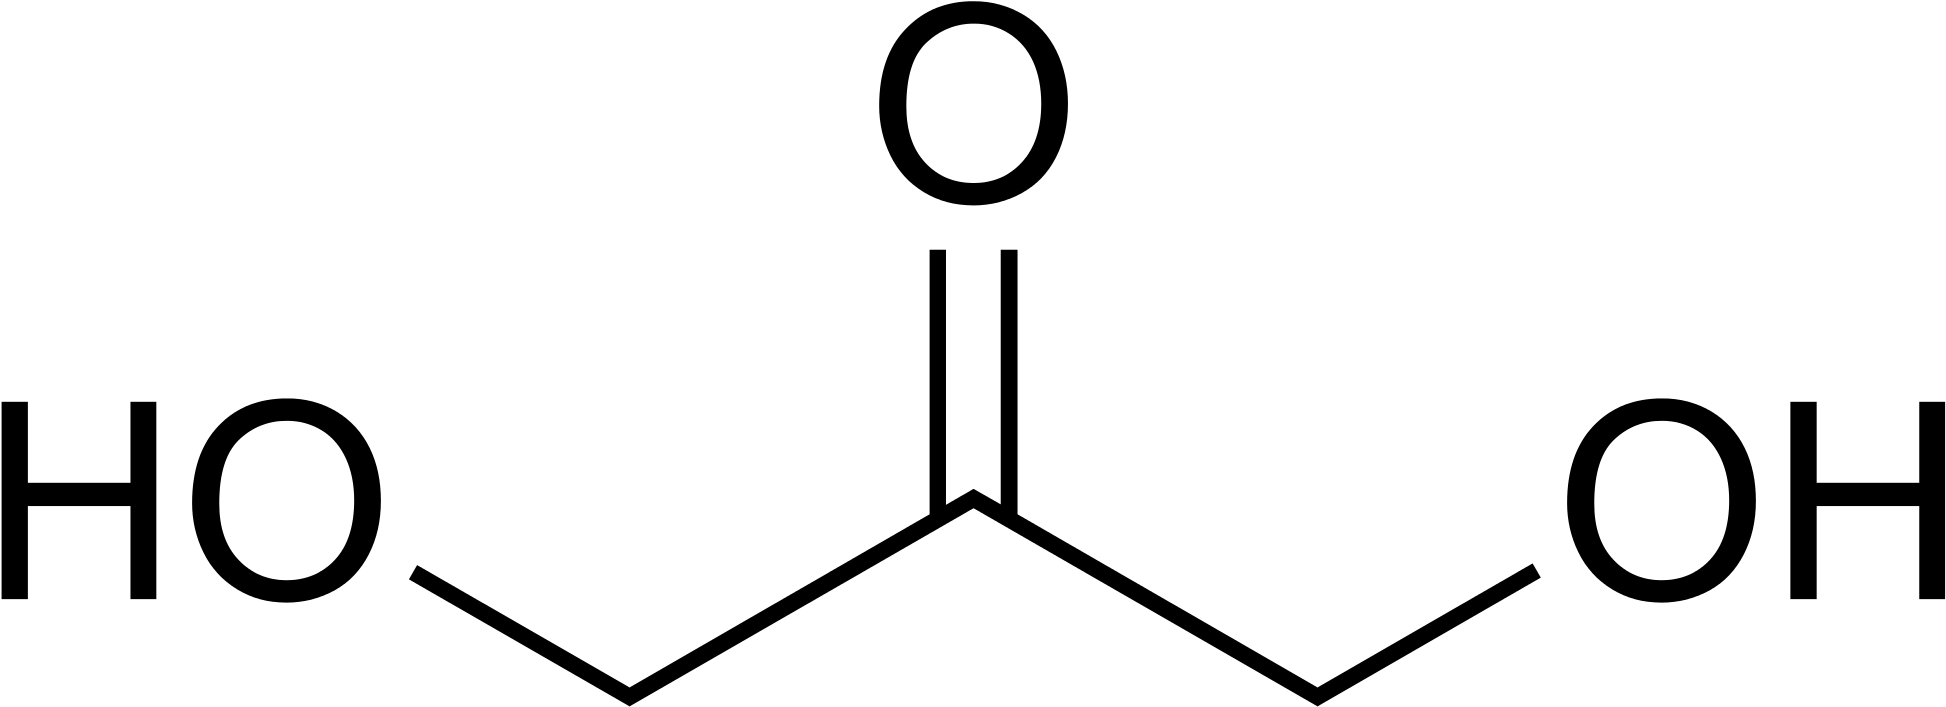 Open - Dihydroxyacetone Structure (2000x772)